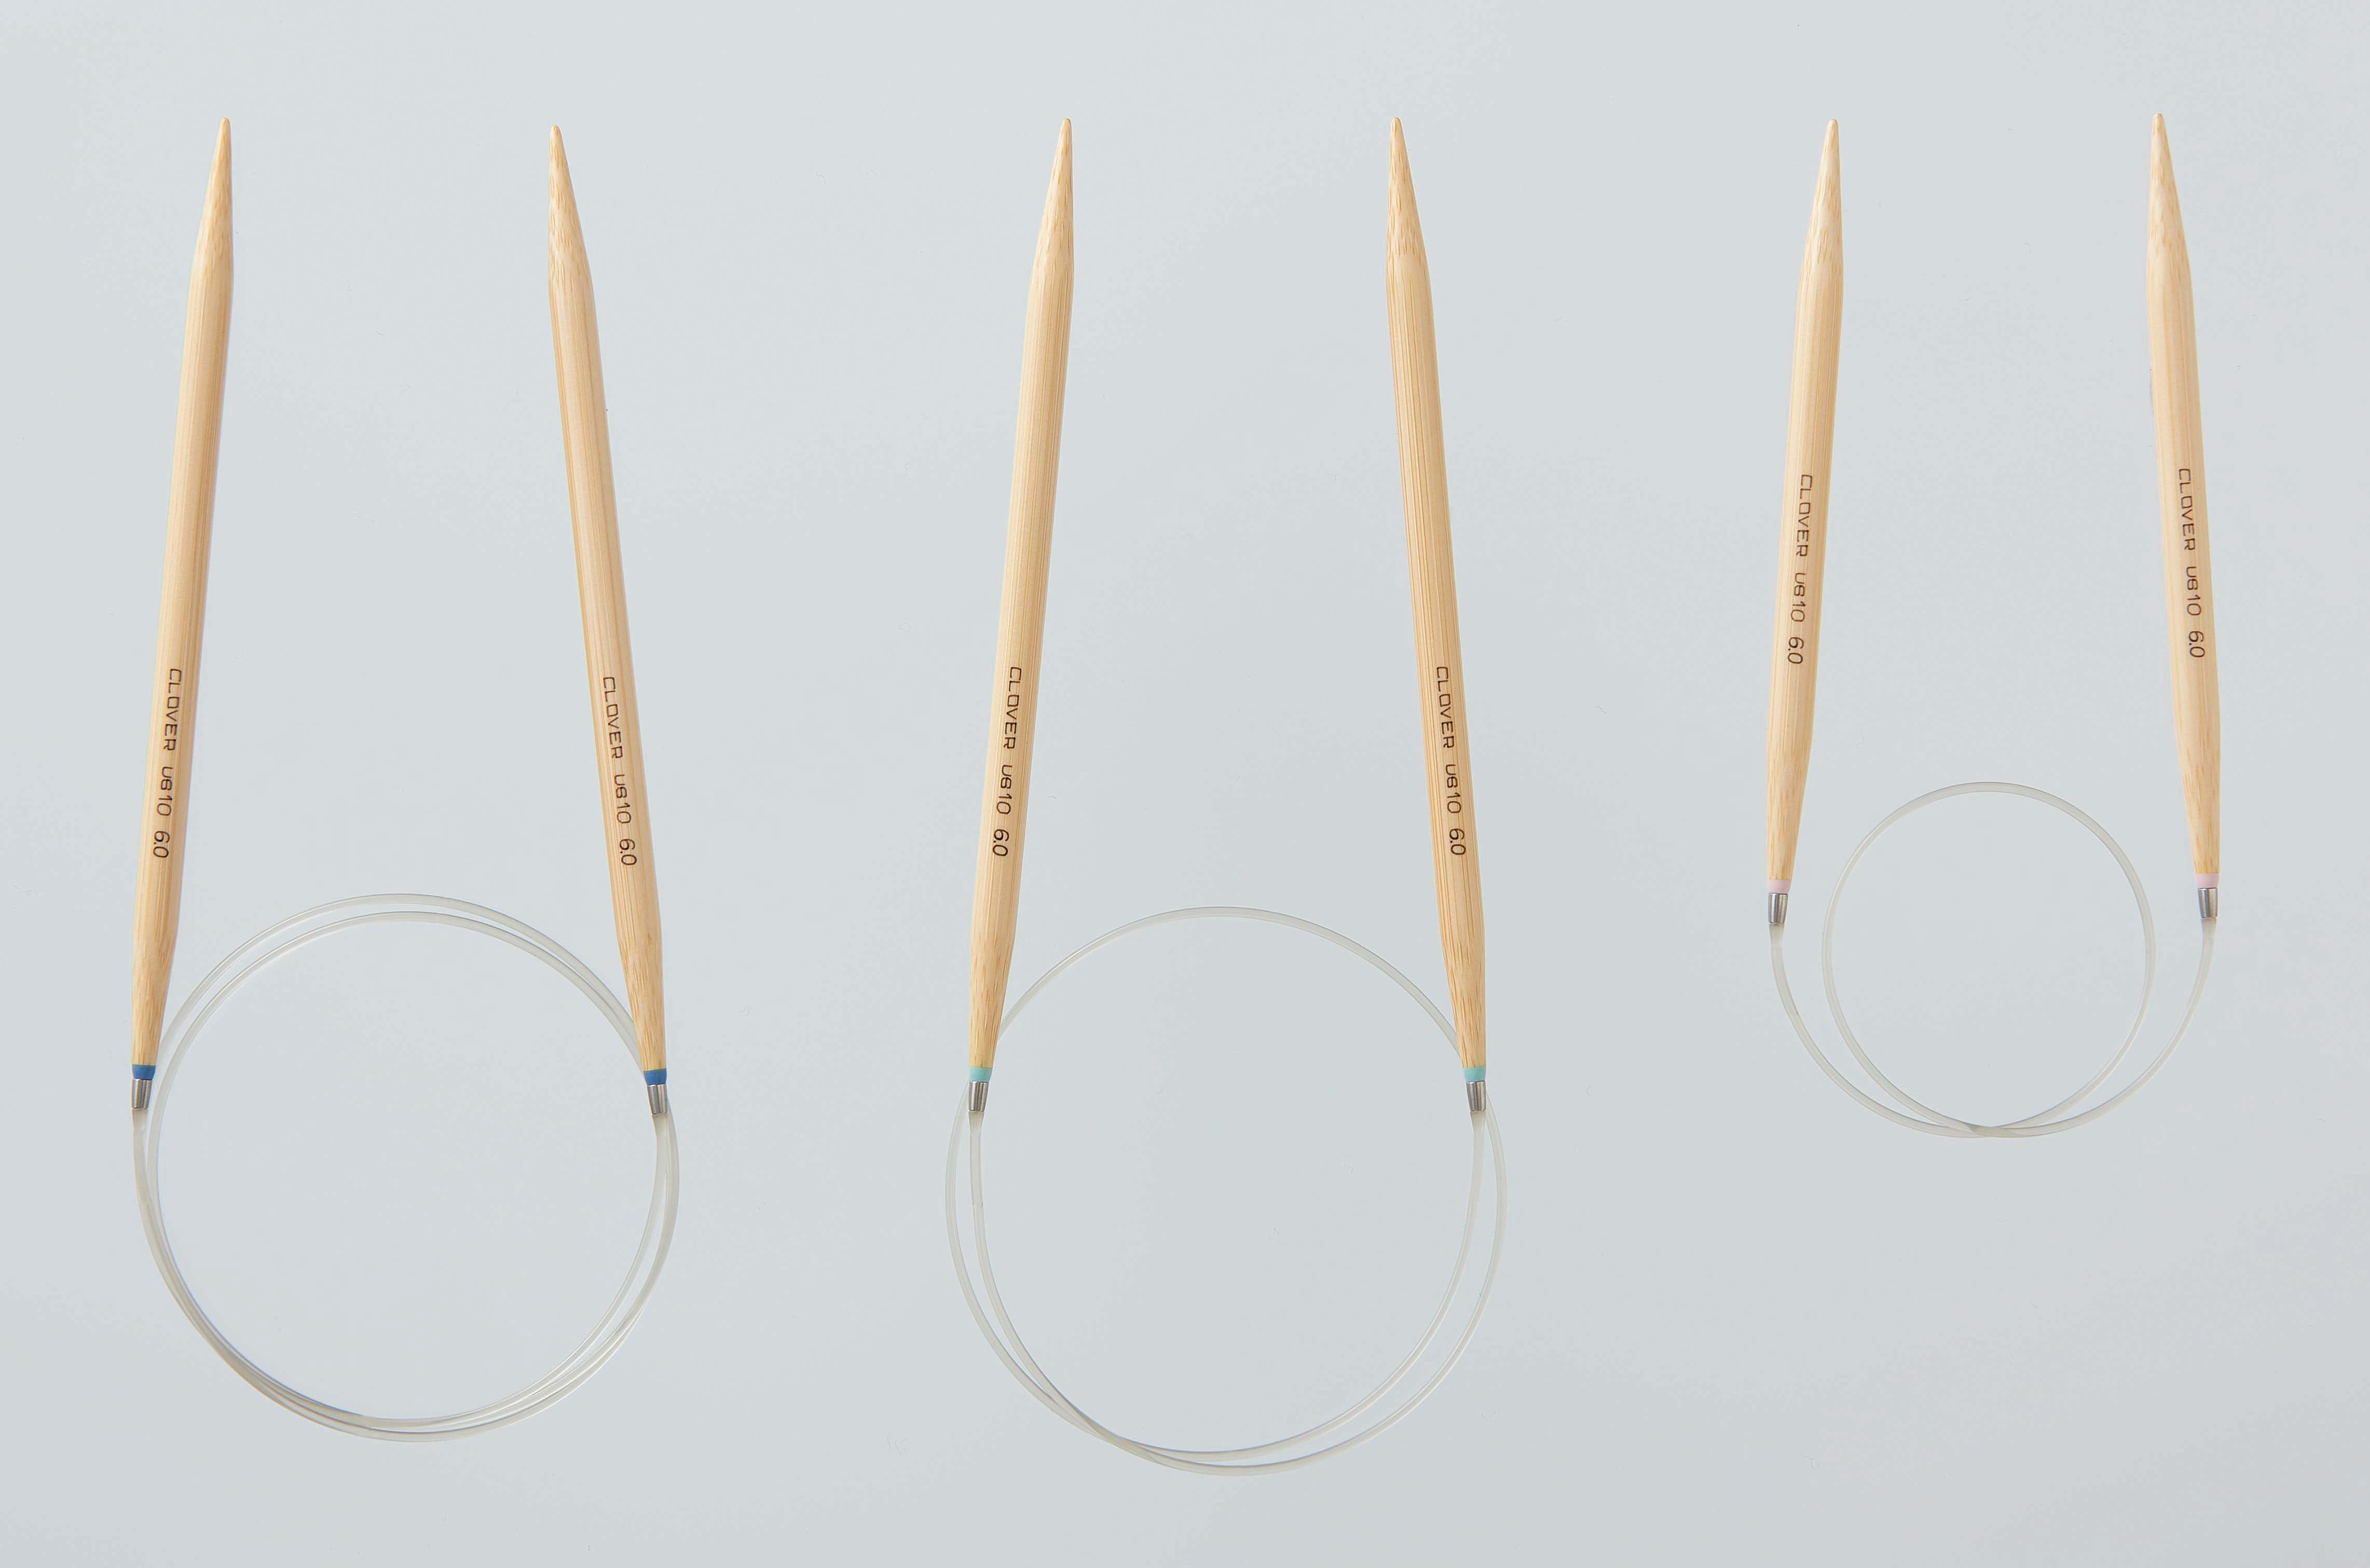 Clover Takumi Bamboo Circular Knitting Needles - Size 8, 16 Length